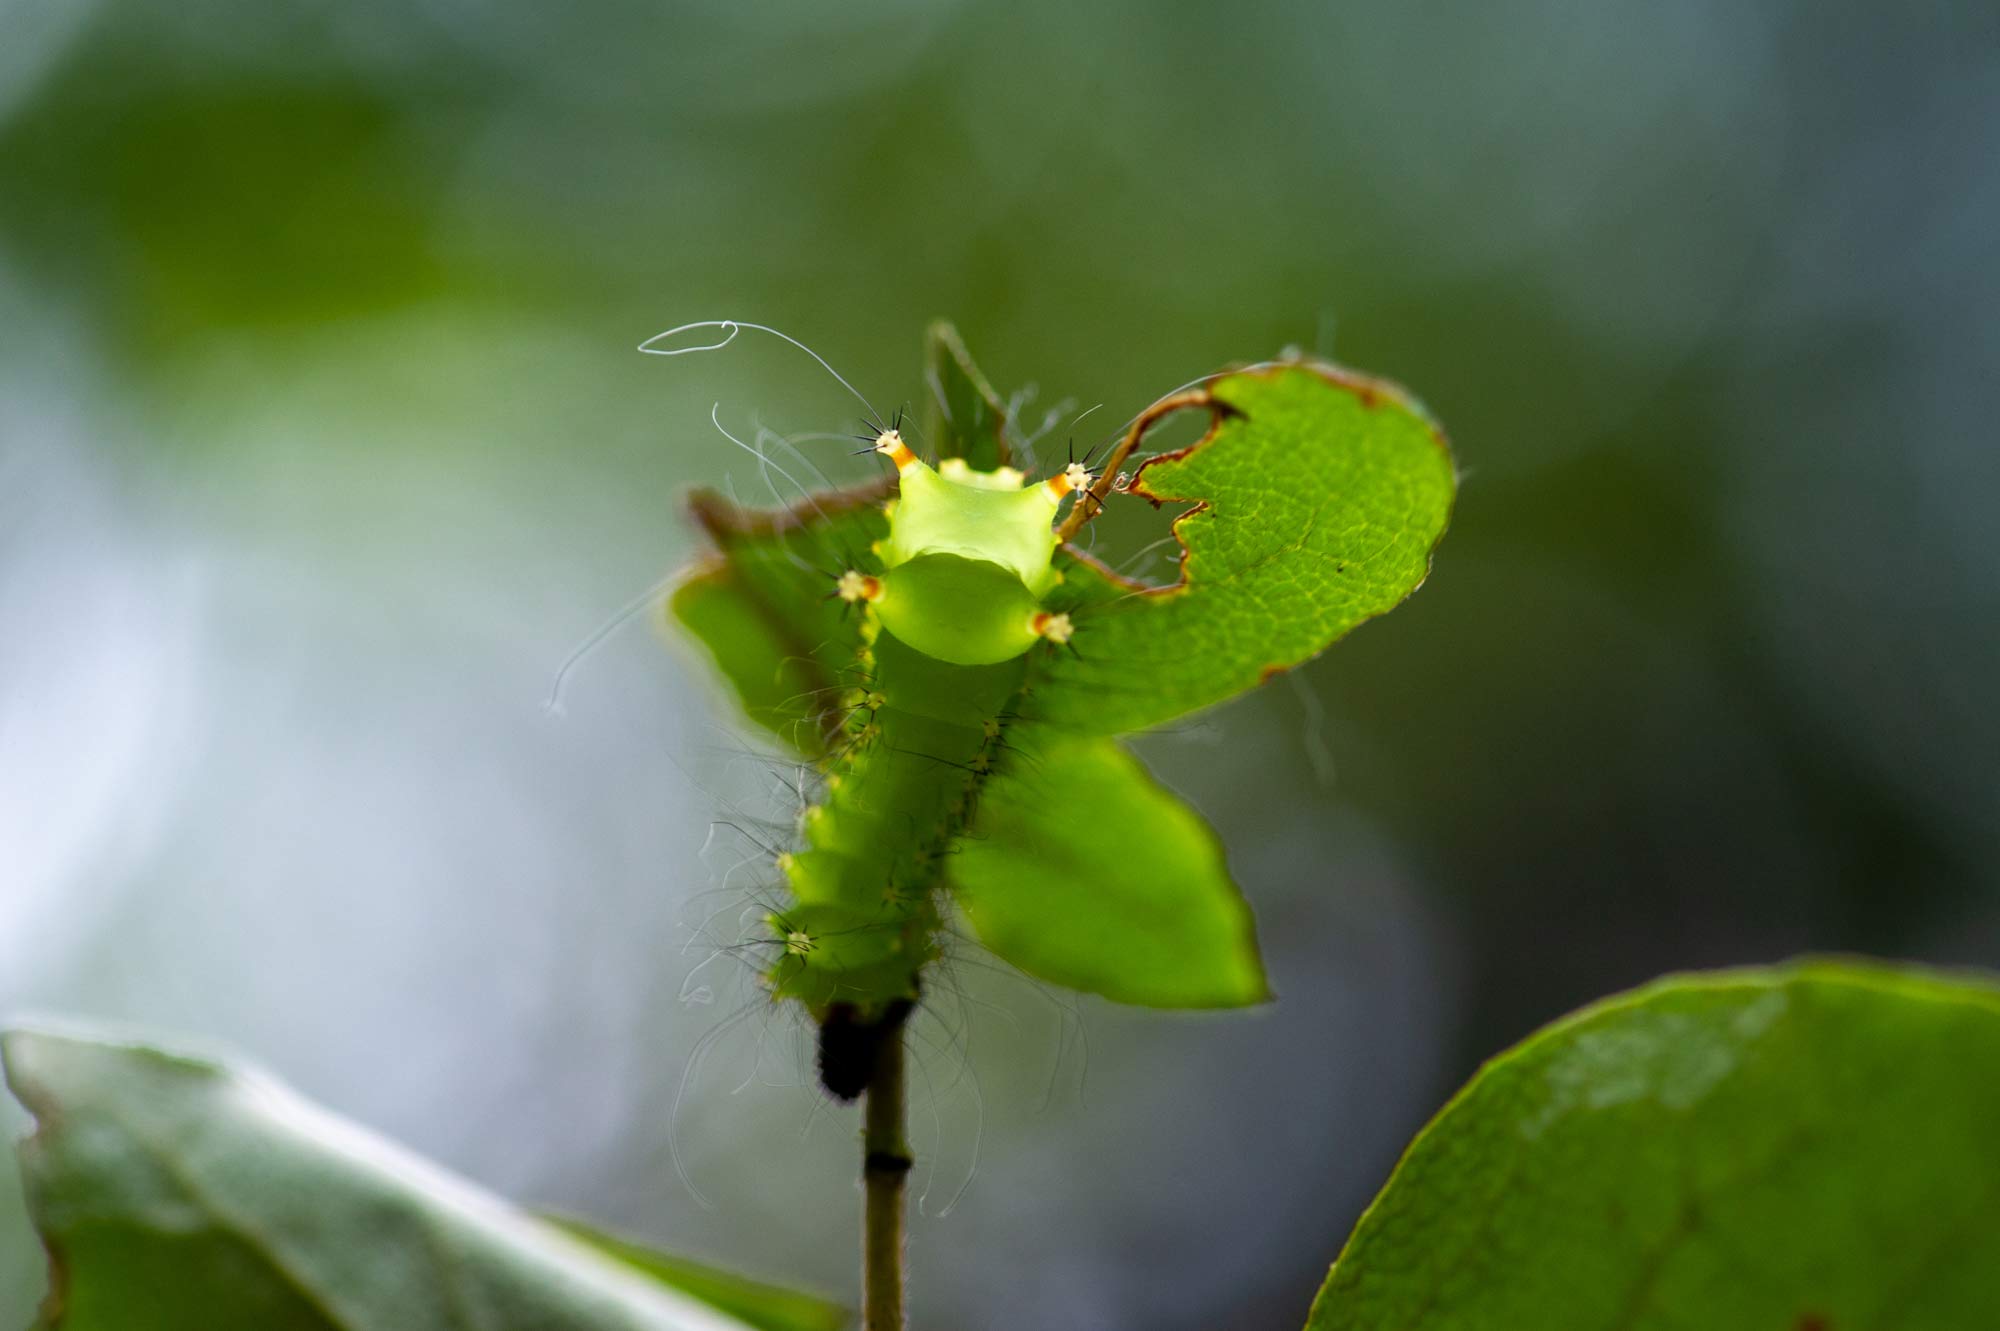 オオミズアオ 幼虫 虫の写真と生態なら昆虫写真図鑑 ムシミル